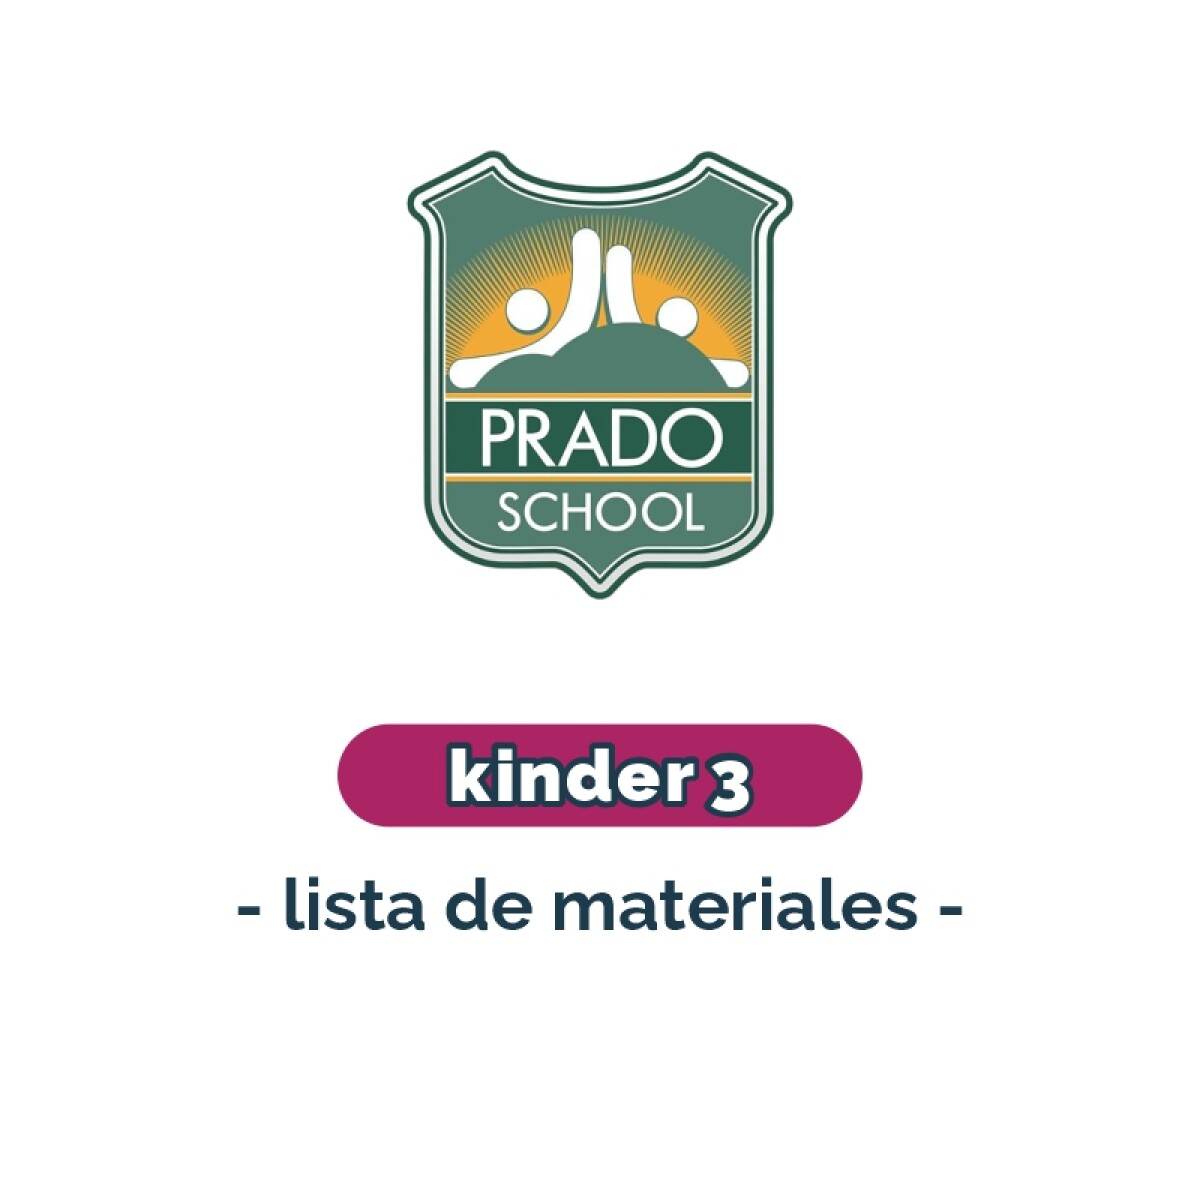 Lista de materiales - Kinder 3 Prado School 